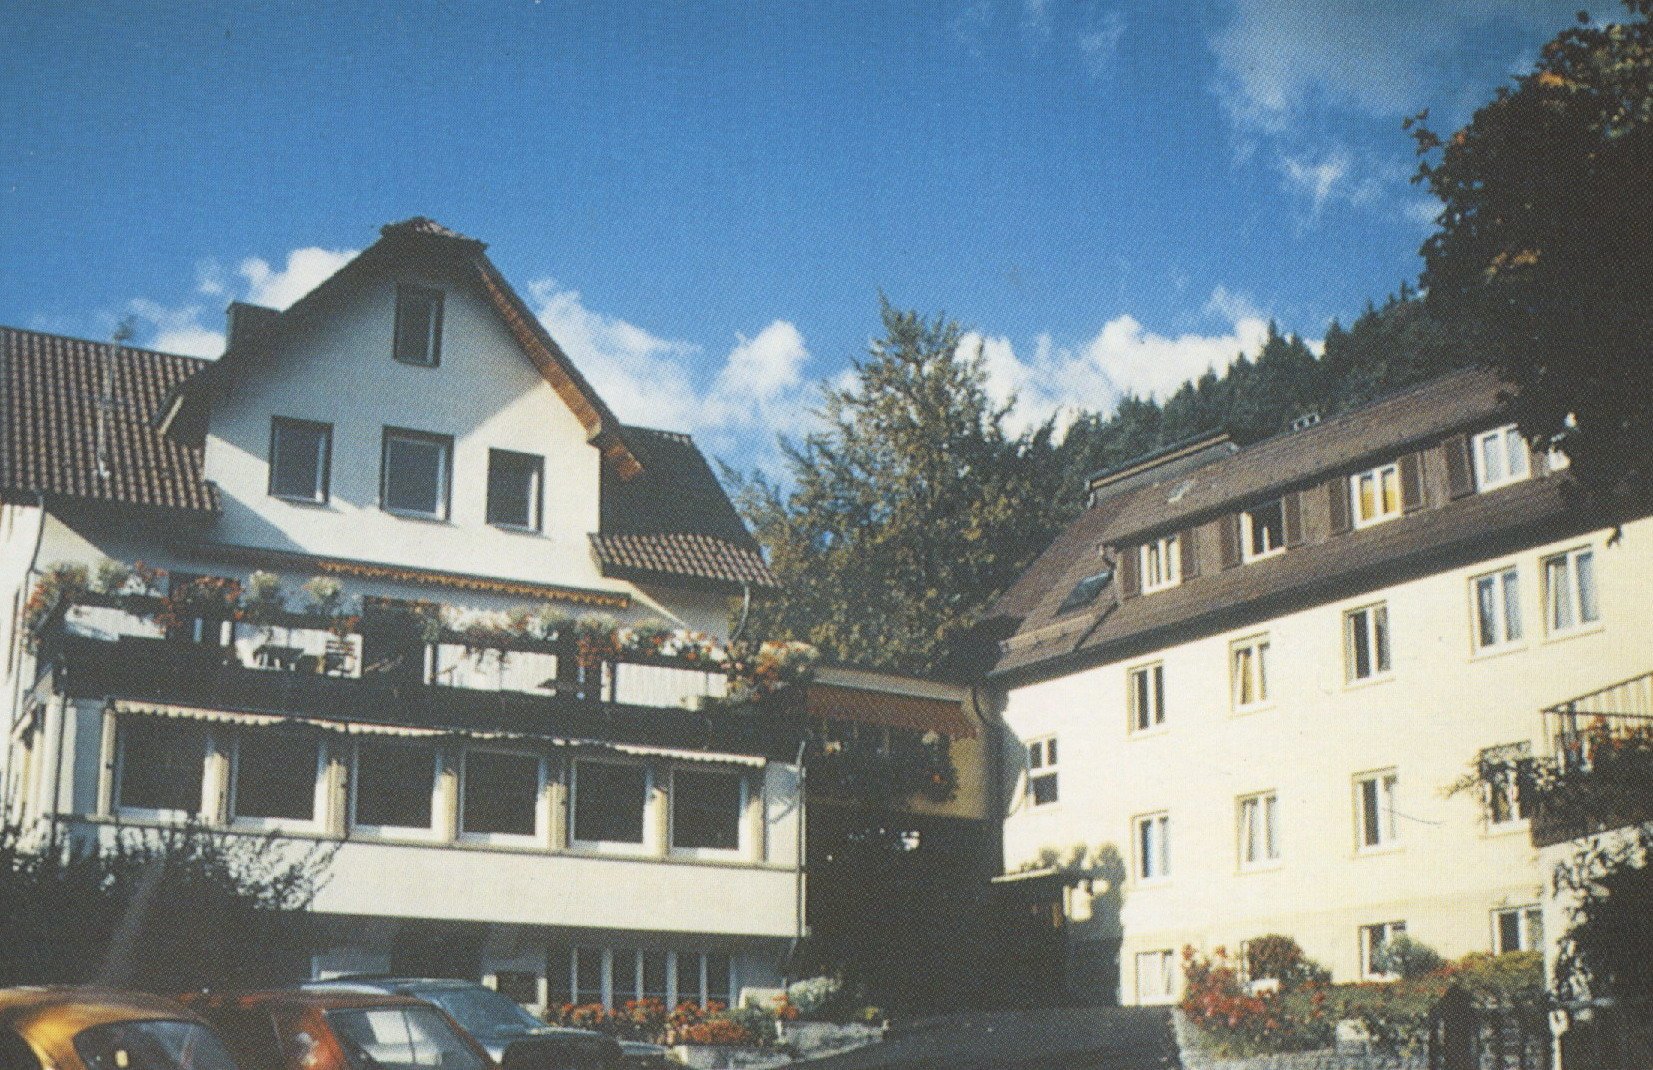 Haus Burgblick und Haus Feierabend